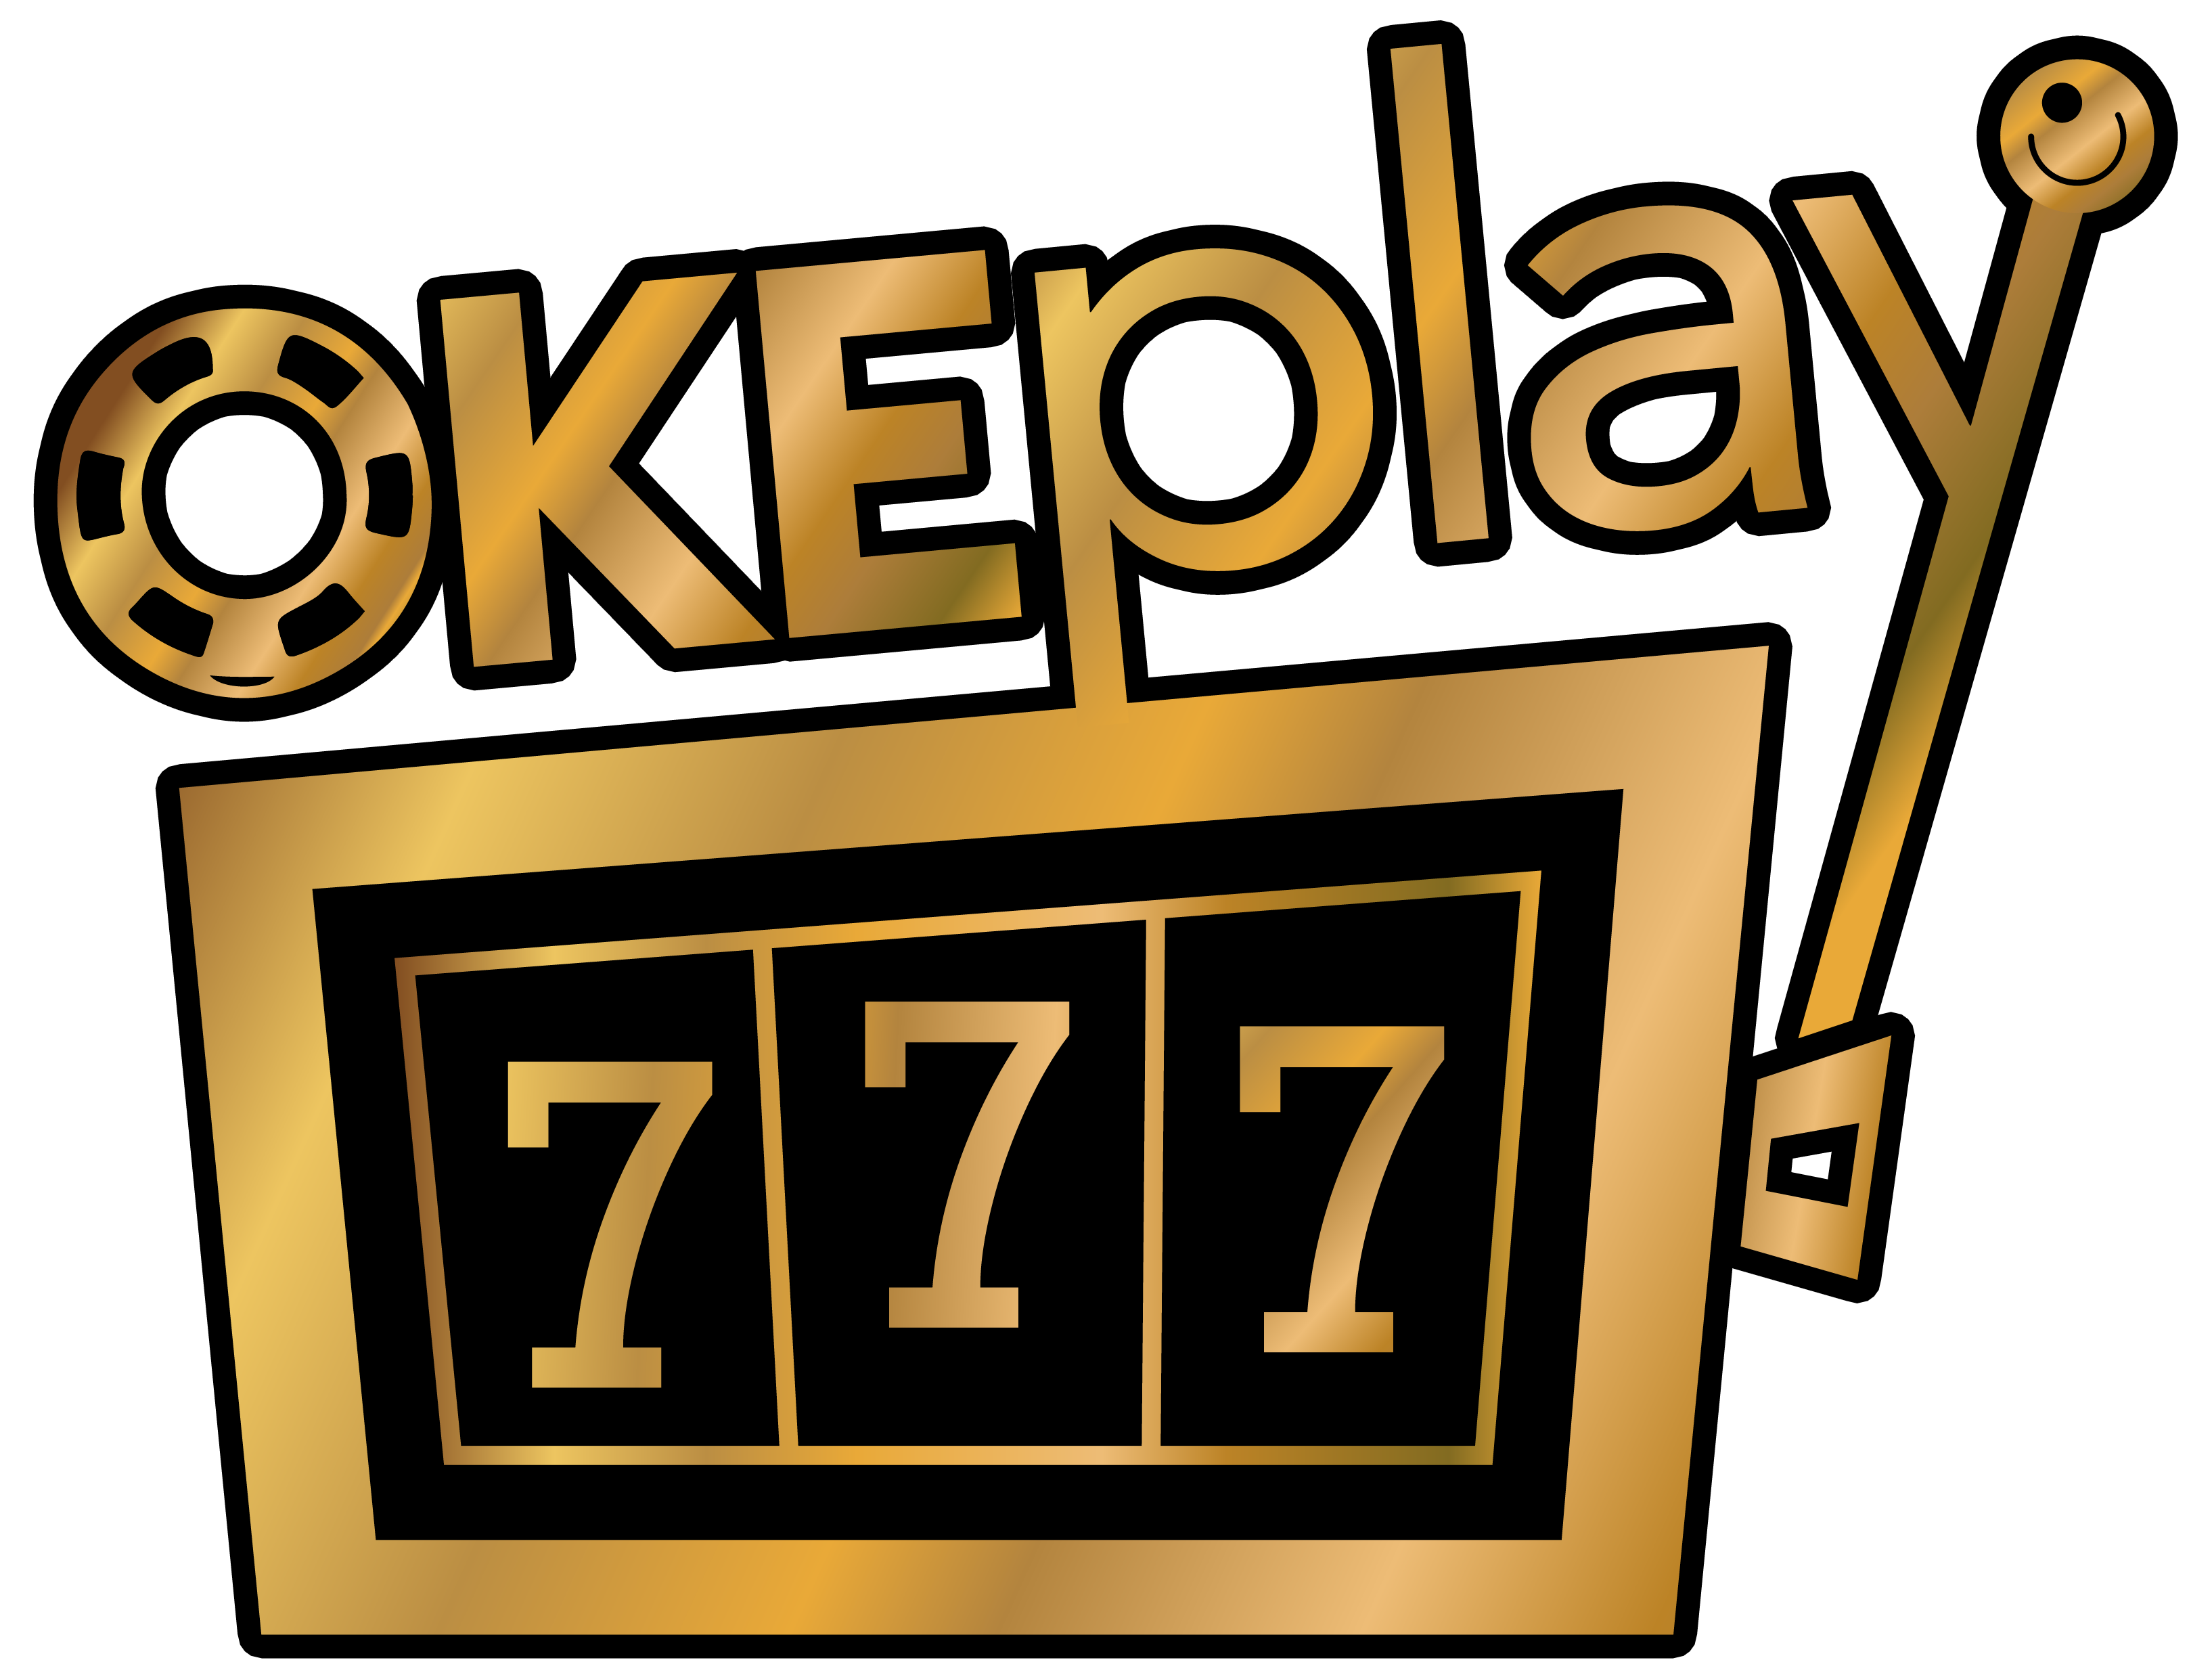 Portal Informasi Okeplay777.